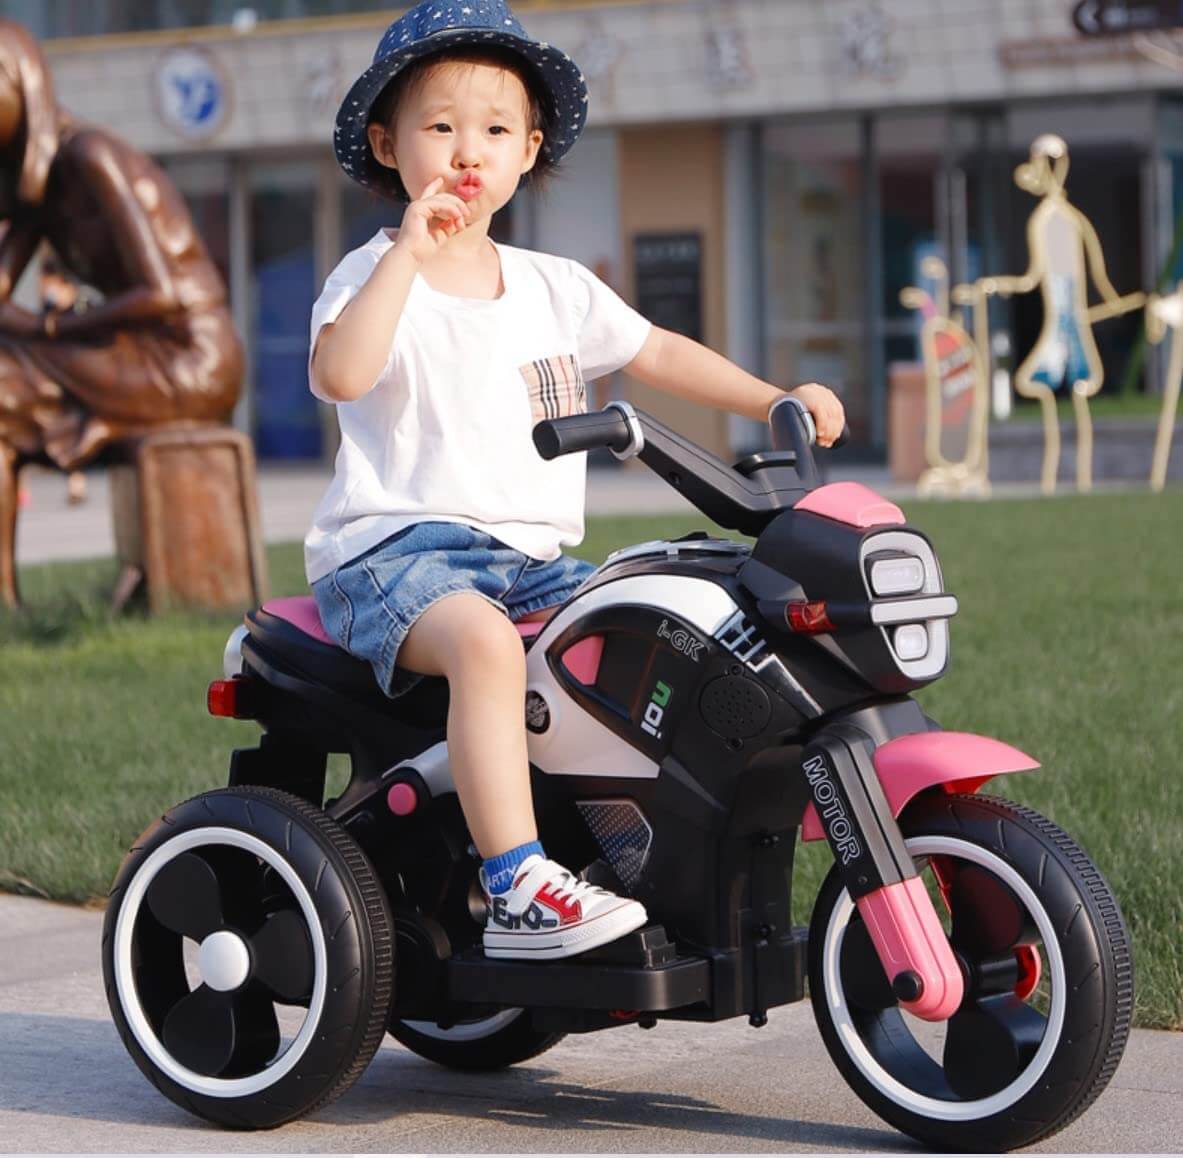 Megastar Ride On 6v Rapid Fire Motorcycle Trike for Kids-pink